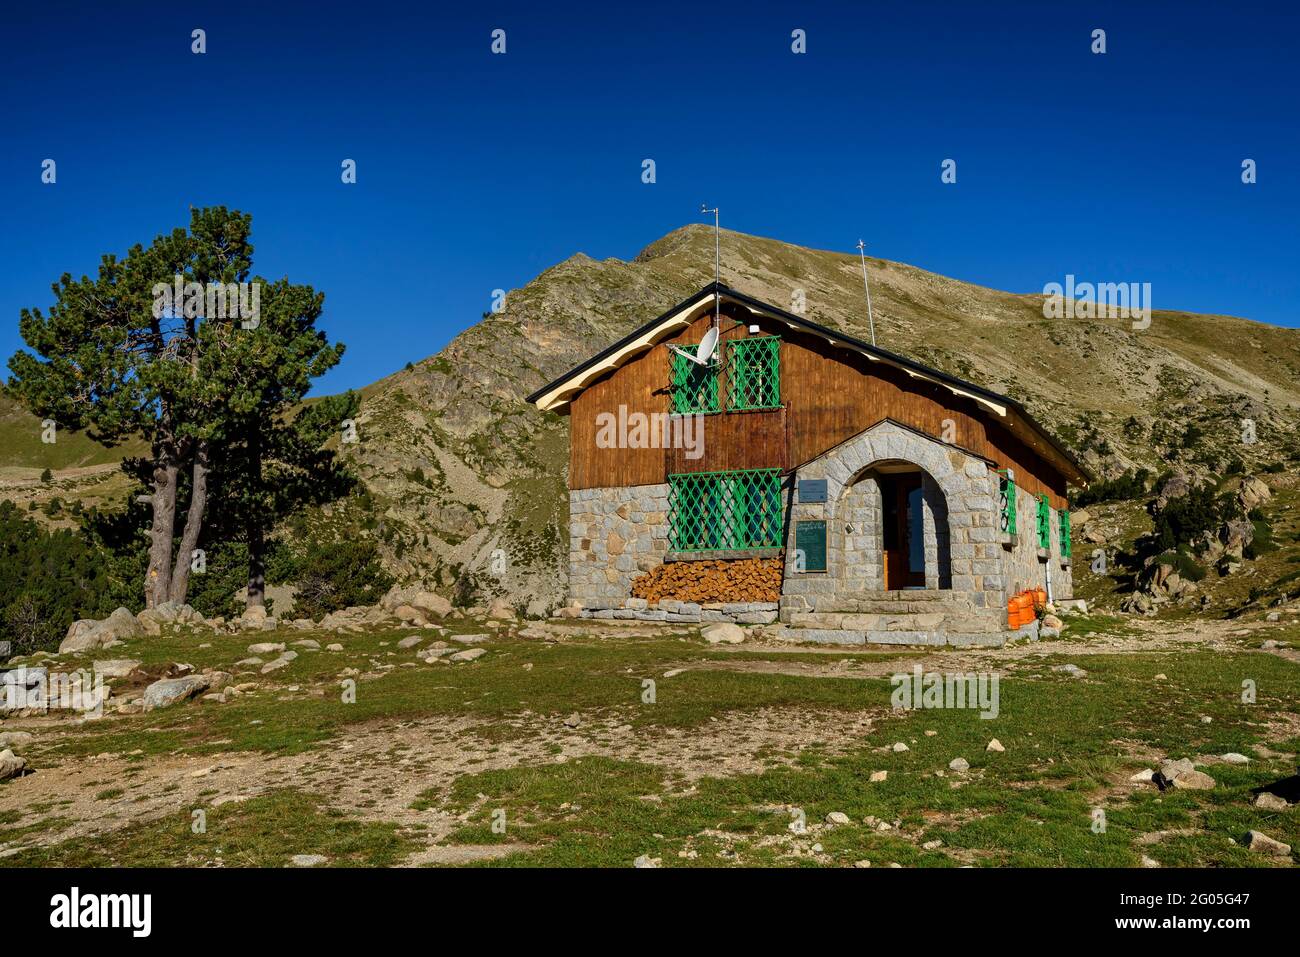 Estanys de la Pera hut in summer (Cerdanya, Catalonia, Spain, Pyrenees) ESP: Refugio de los Estanys de la Pera en verano (Cerdaña, Cataluña, España) Stock Photo